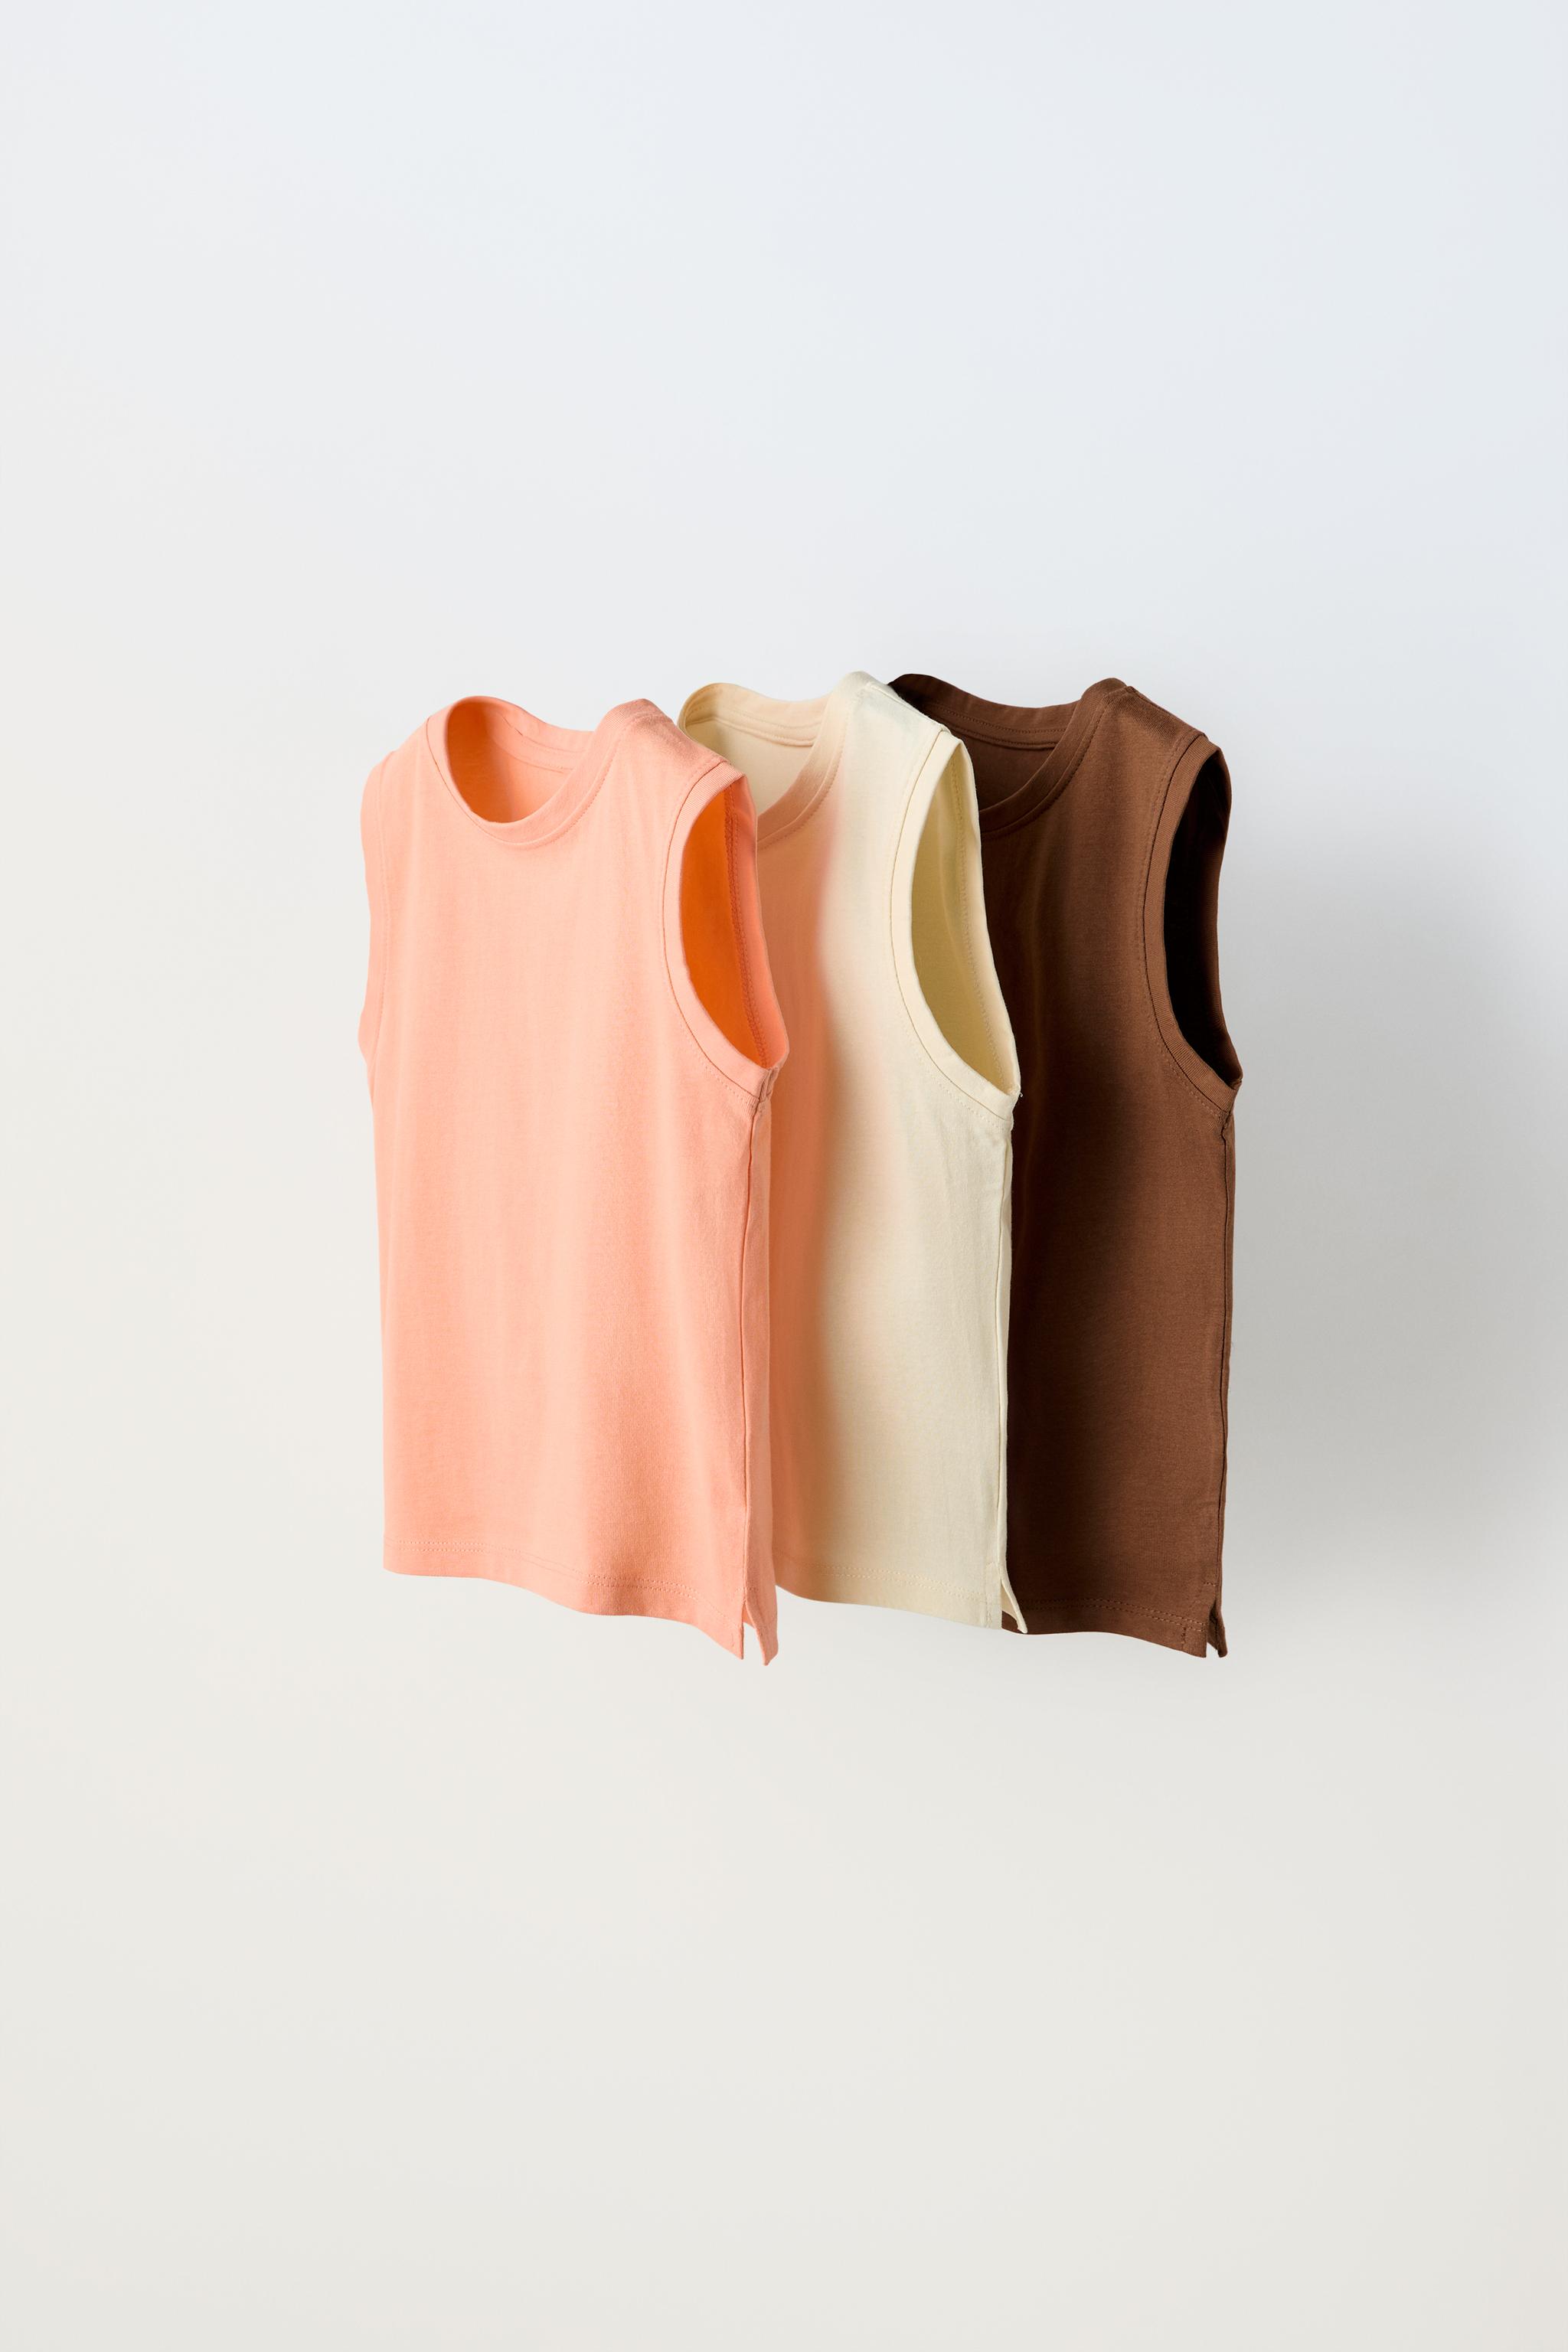 ノースリーブTシャツ x 3セット - オレンジ色 | ZARA Japan / 日本